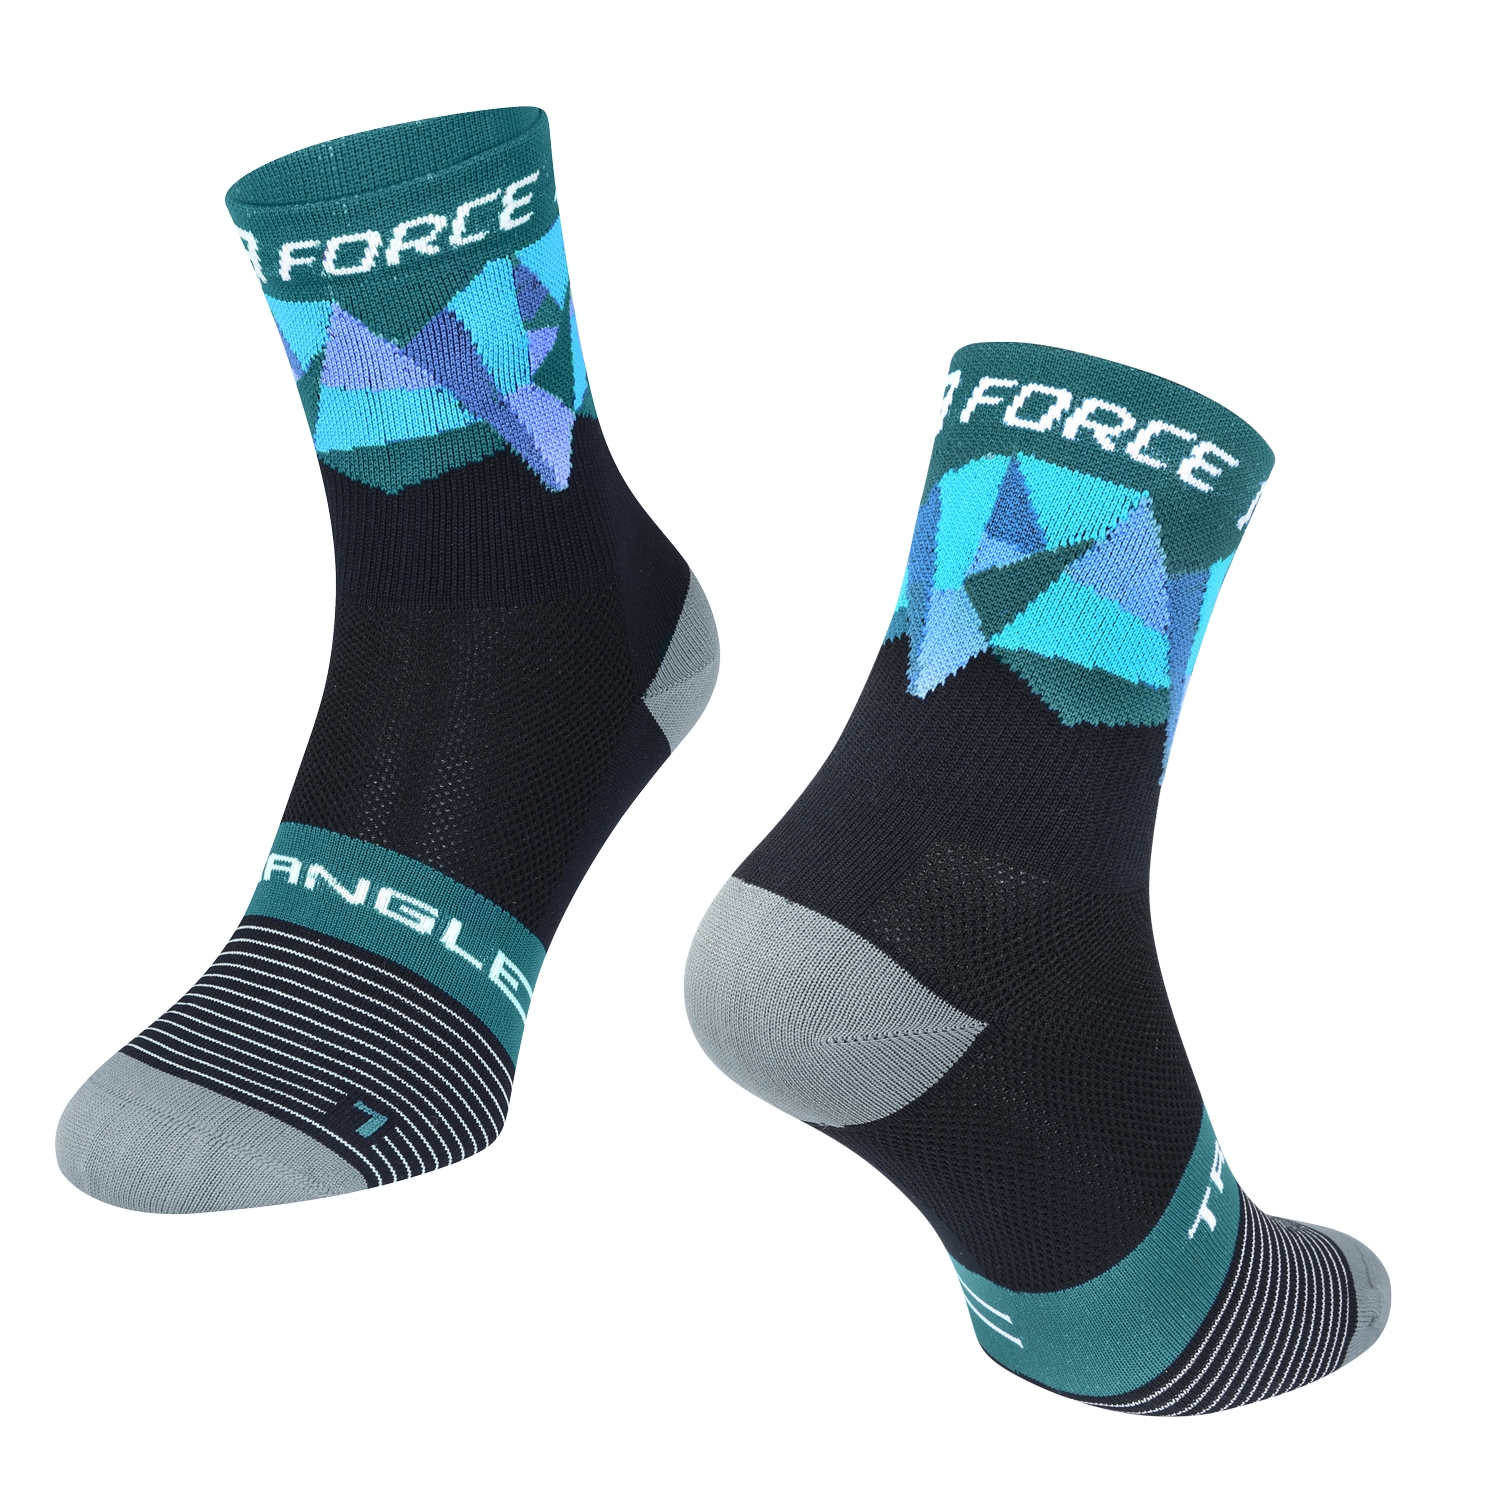 ponožky F TRIANGLE, černo-tyrkysové S-M/36-41